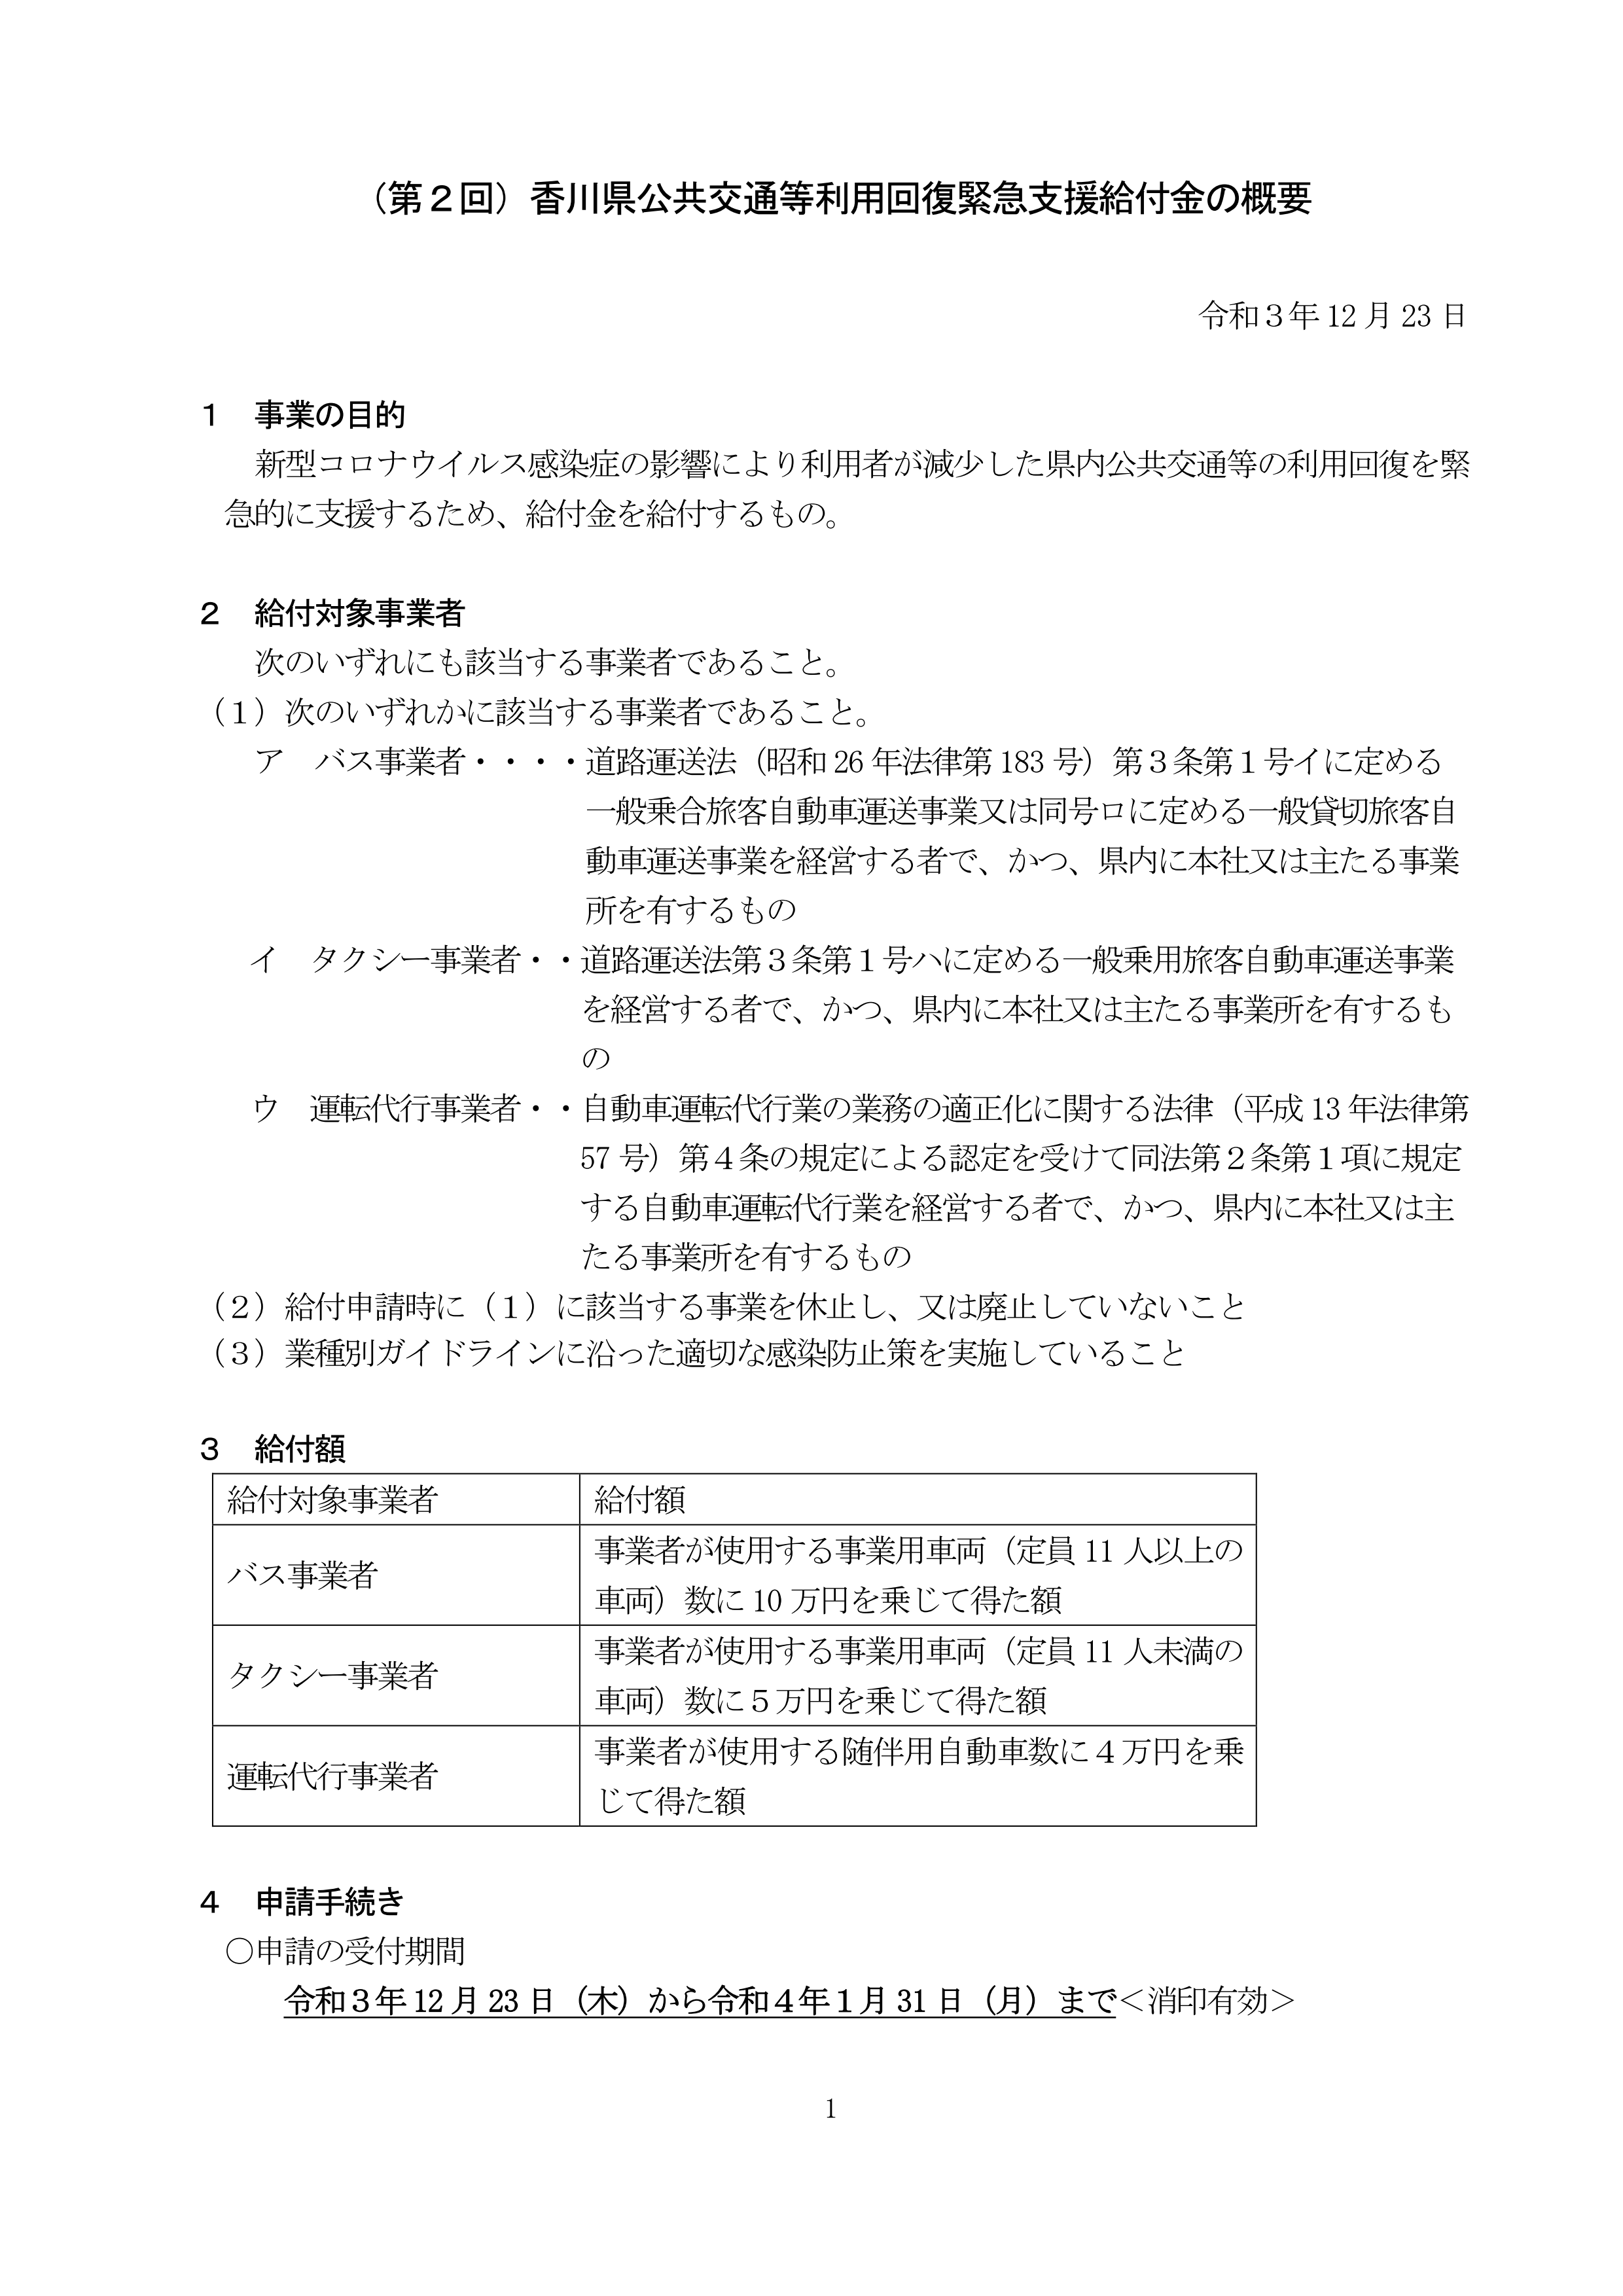 香川県公共交通等利用回復緊急支援事業について（香川県）